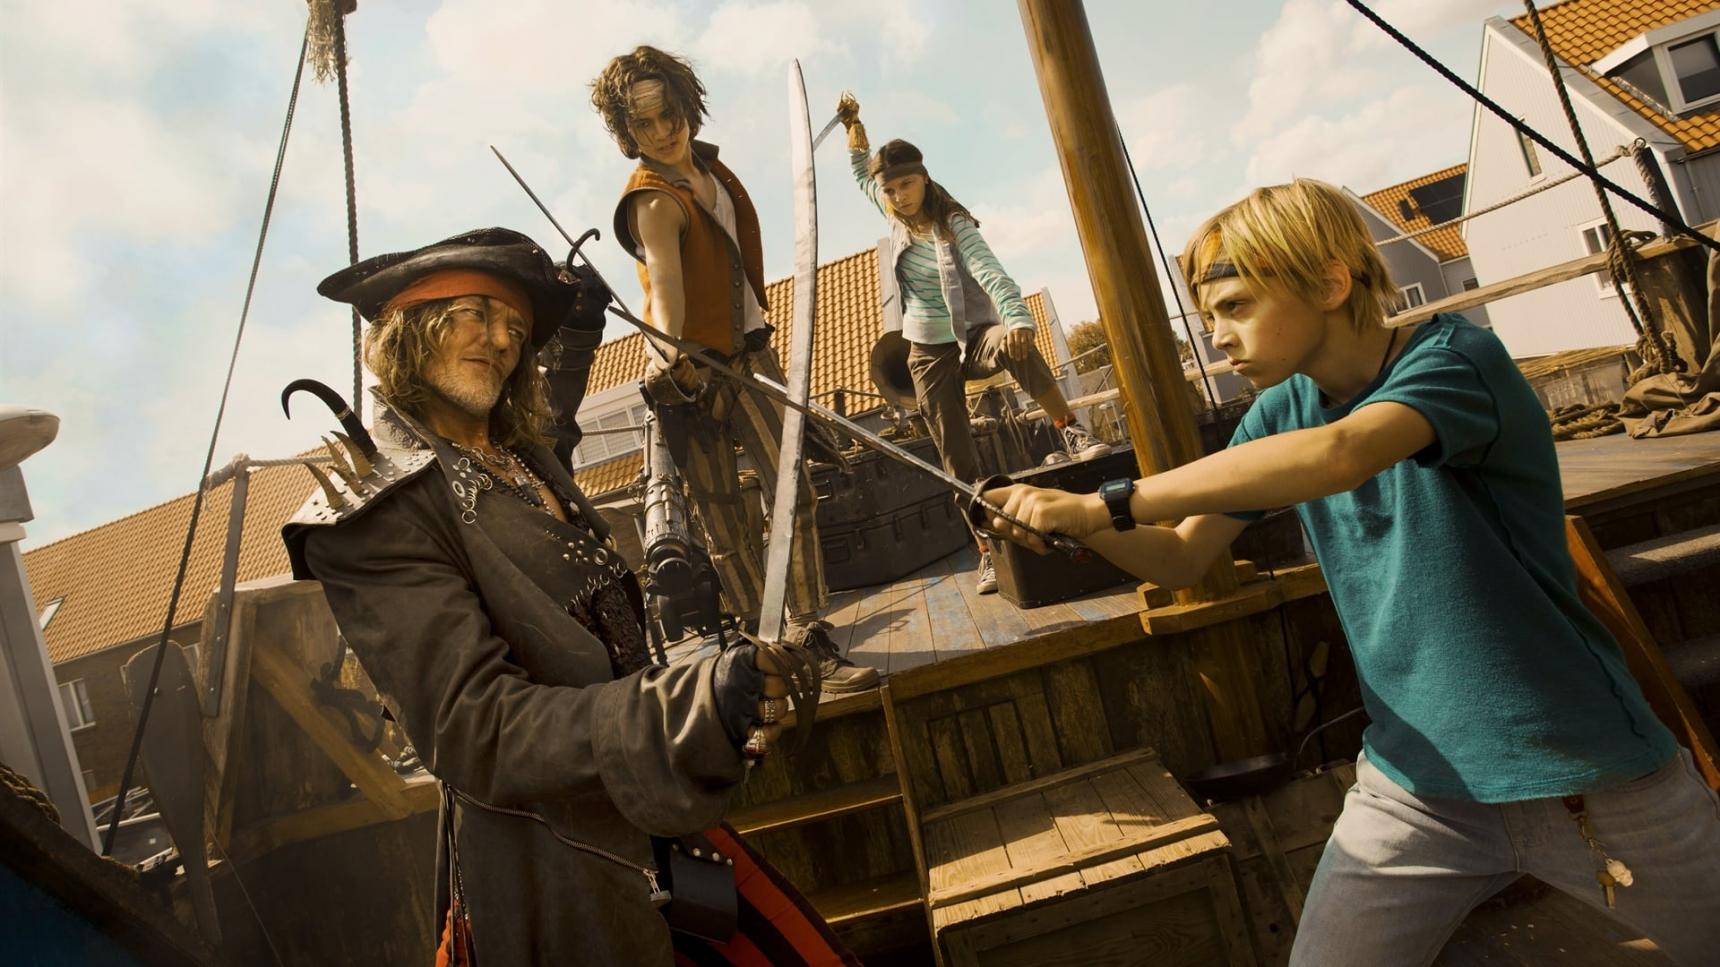 Fondo de pantalla de la película De Piraten van Hiernaast en PELISPEDIA gratis